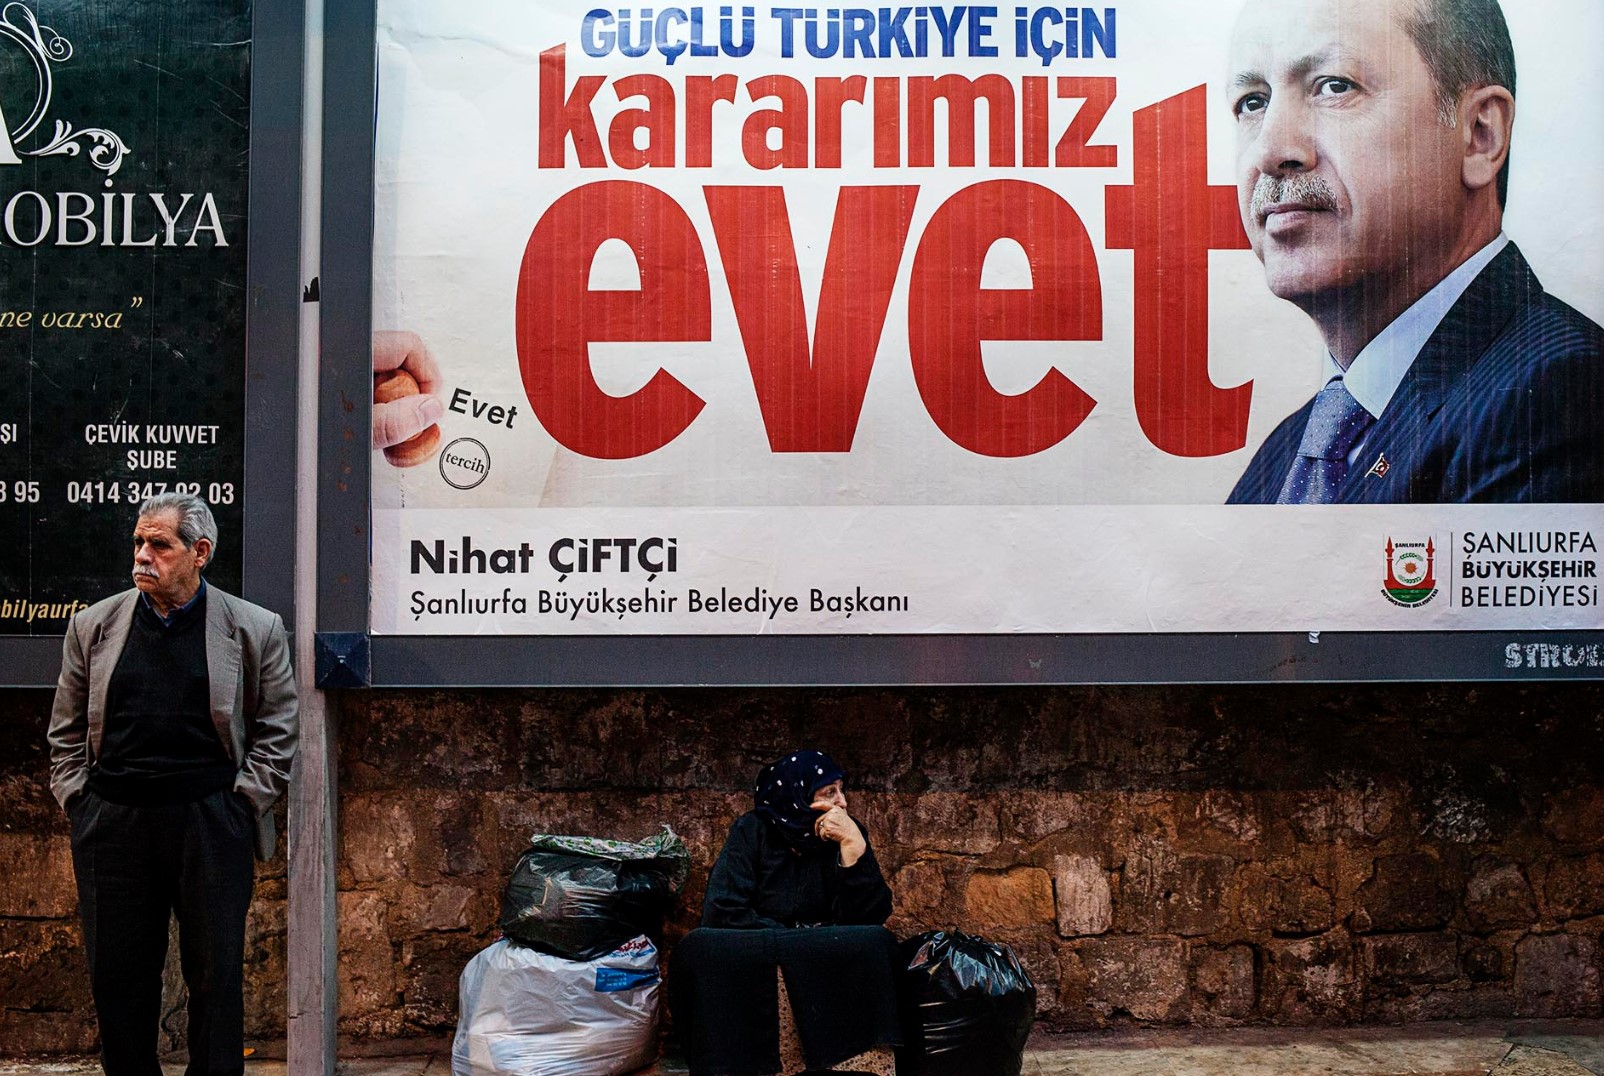 Cartel por el SÍ en el referéndum de 2017 de Turquía. Fuente: Eulixe.com (Imagen cedida por el autor)